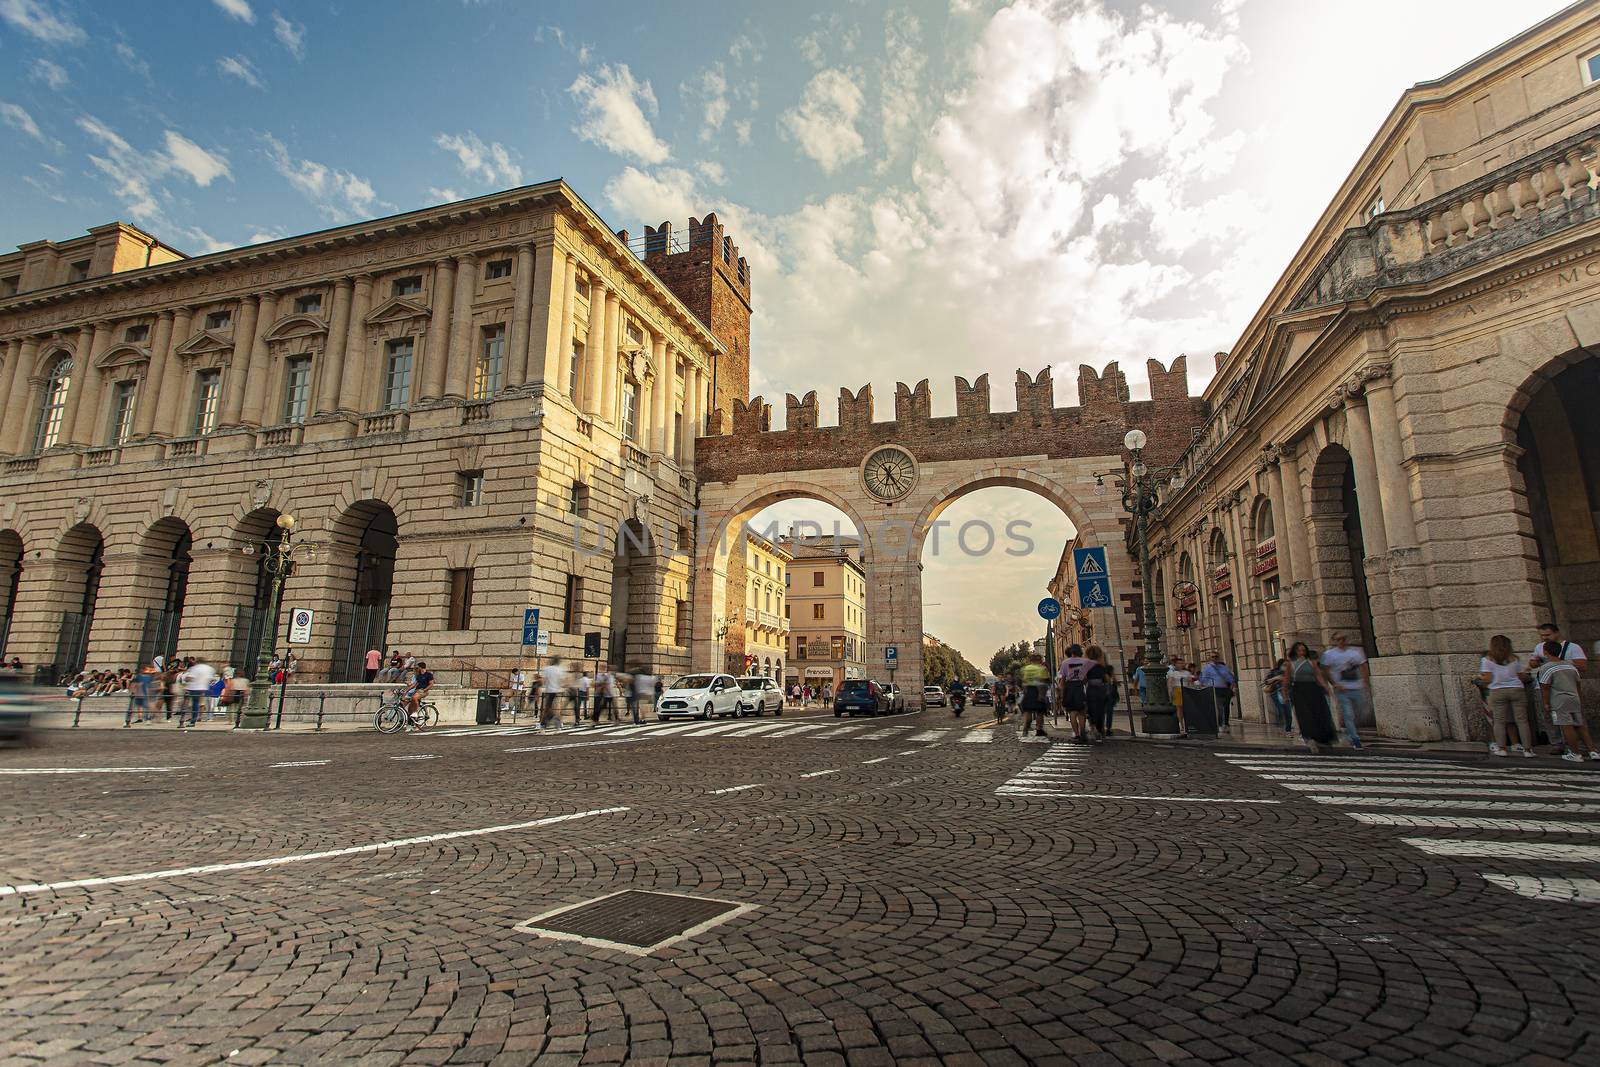 Portoni della Bra view with city life in Verona in Italy by pippocarlot